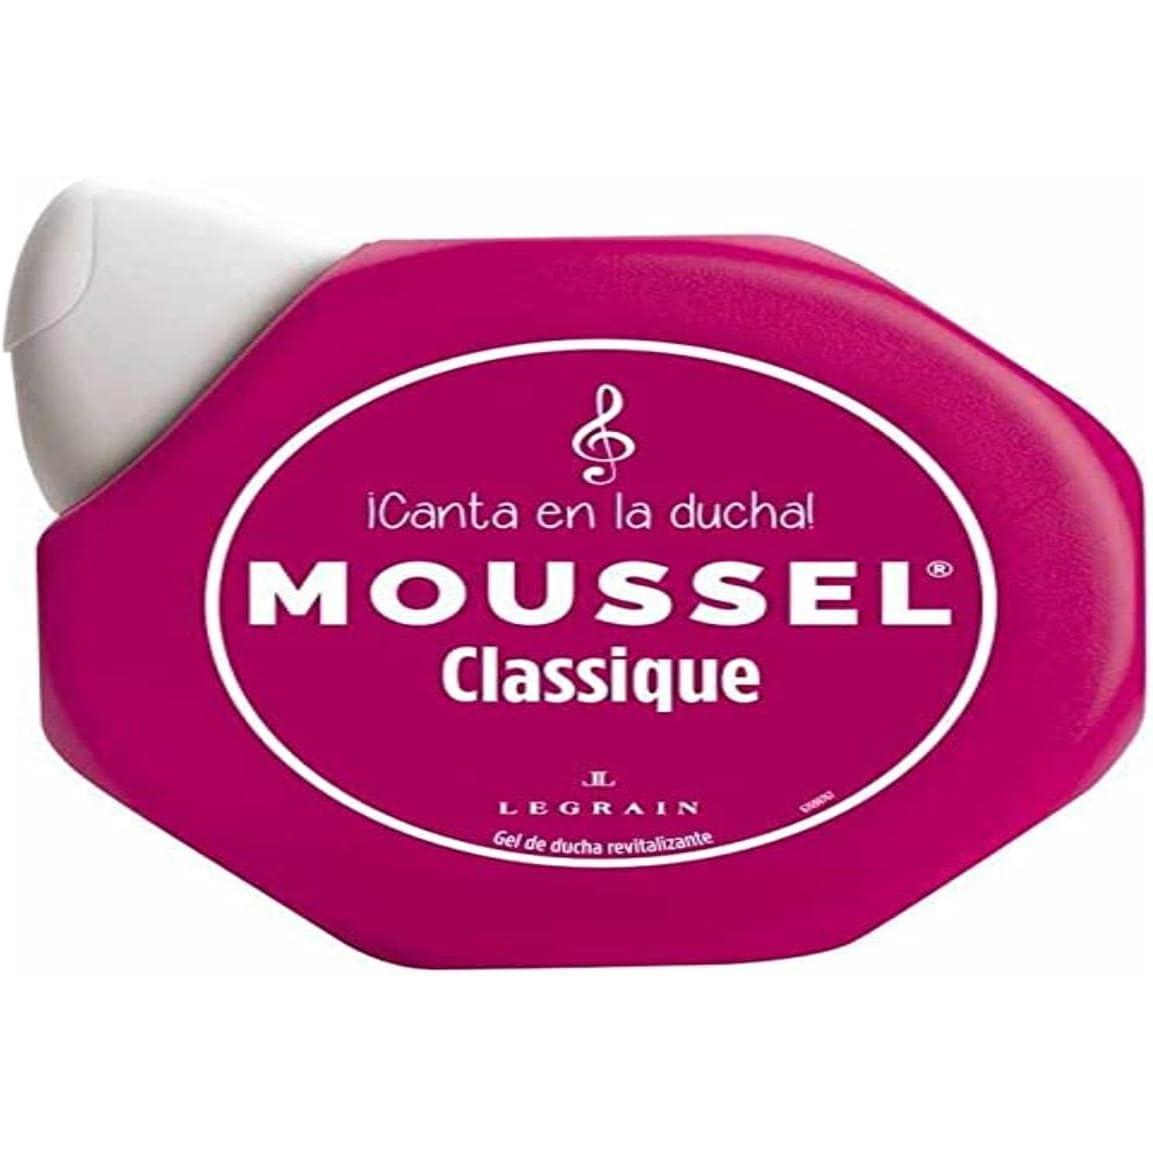 Moussel - 